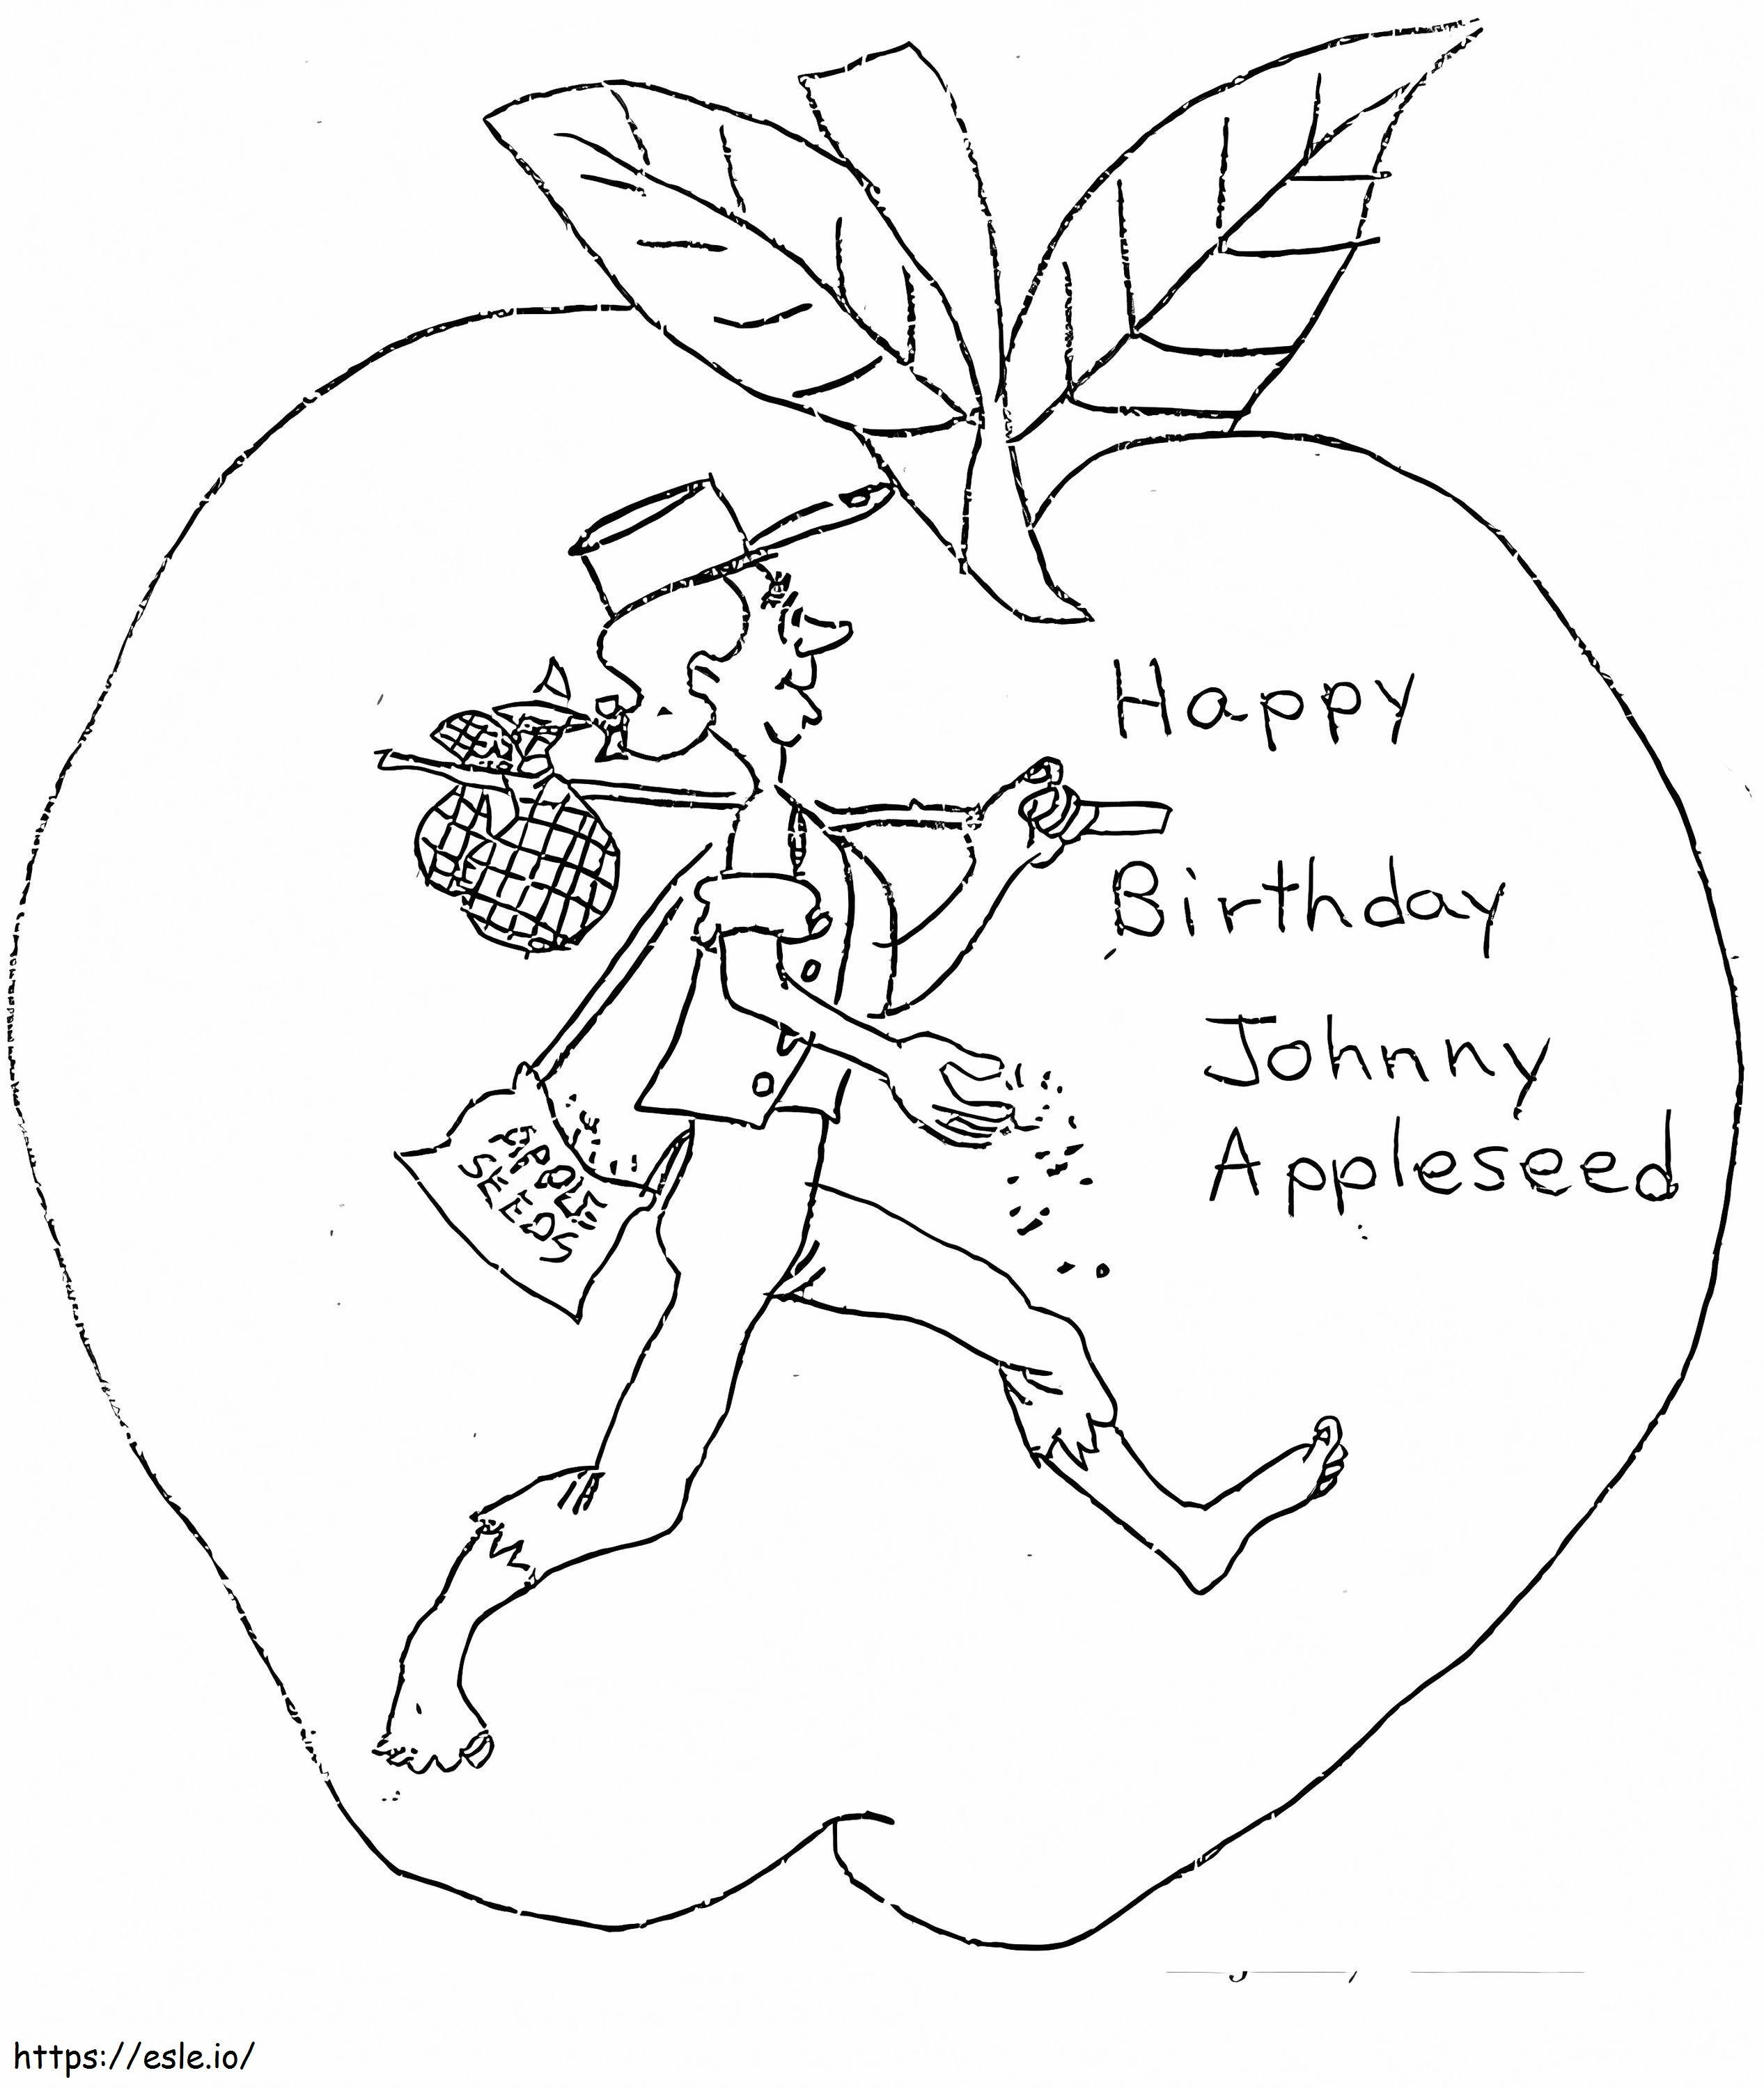 Wszystkiego najlepszego Johnny Appleseed kolorowanka